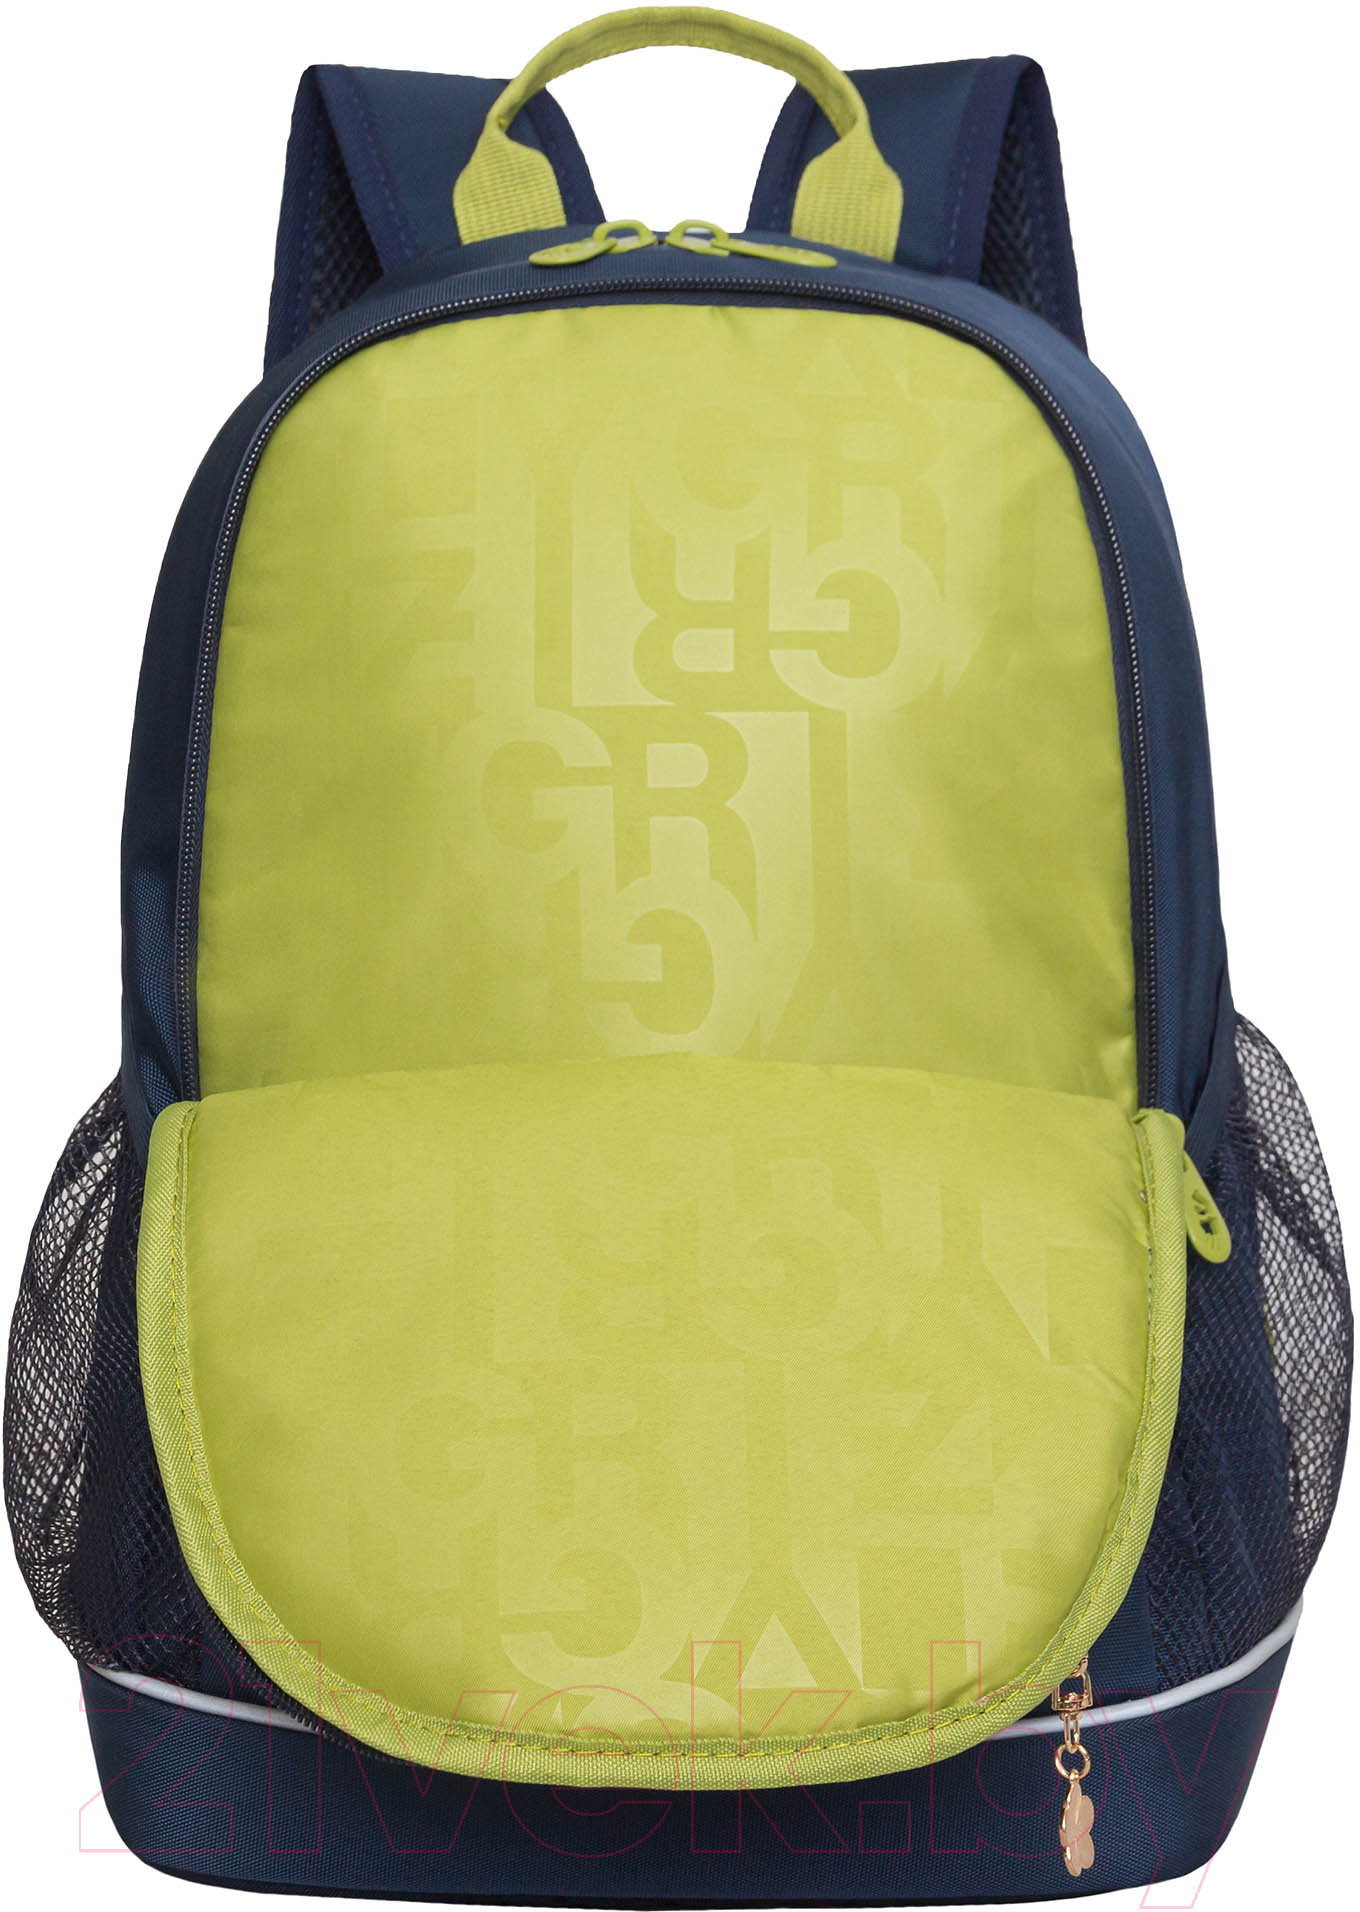 Школьный рюкзак Grizzly RG-363-3